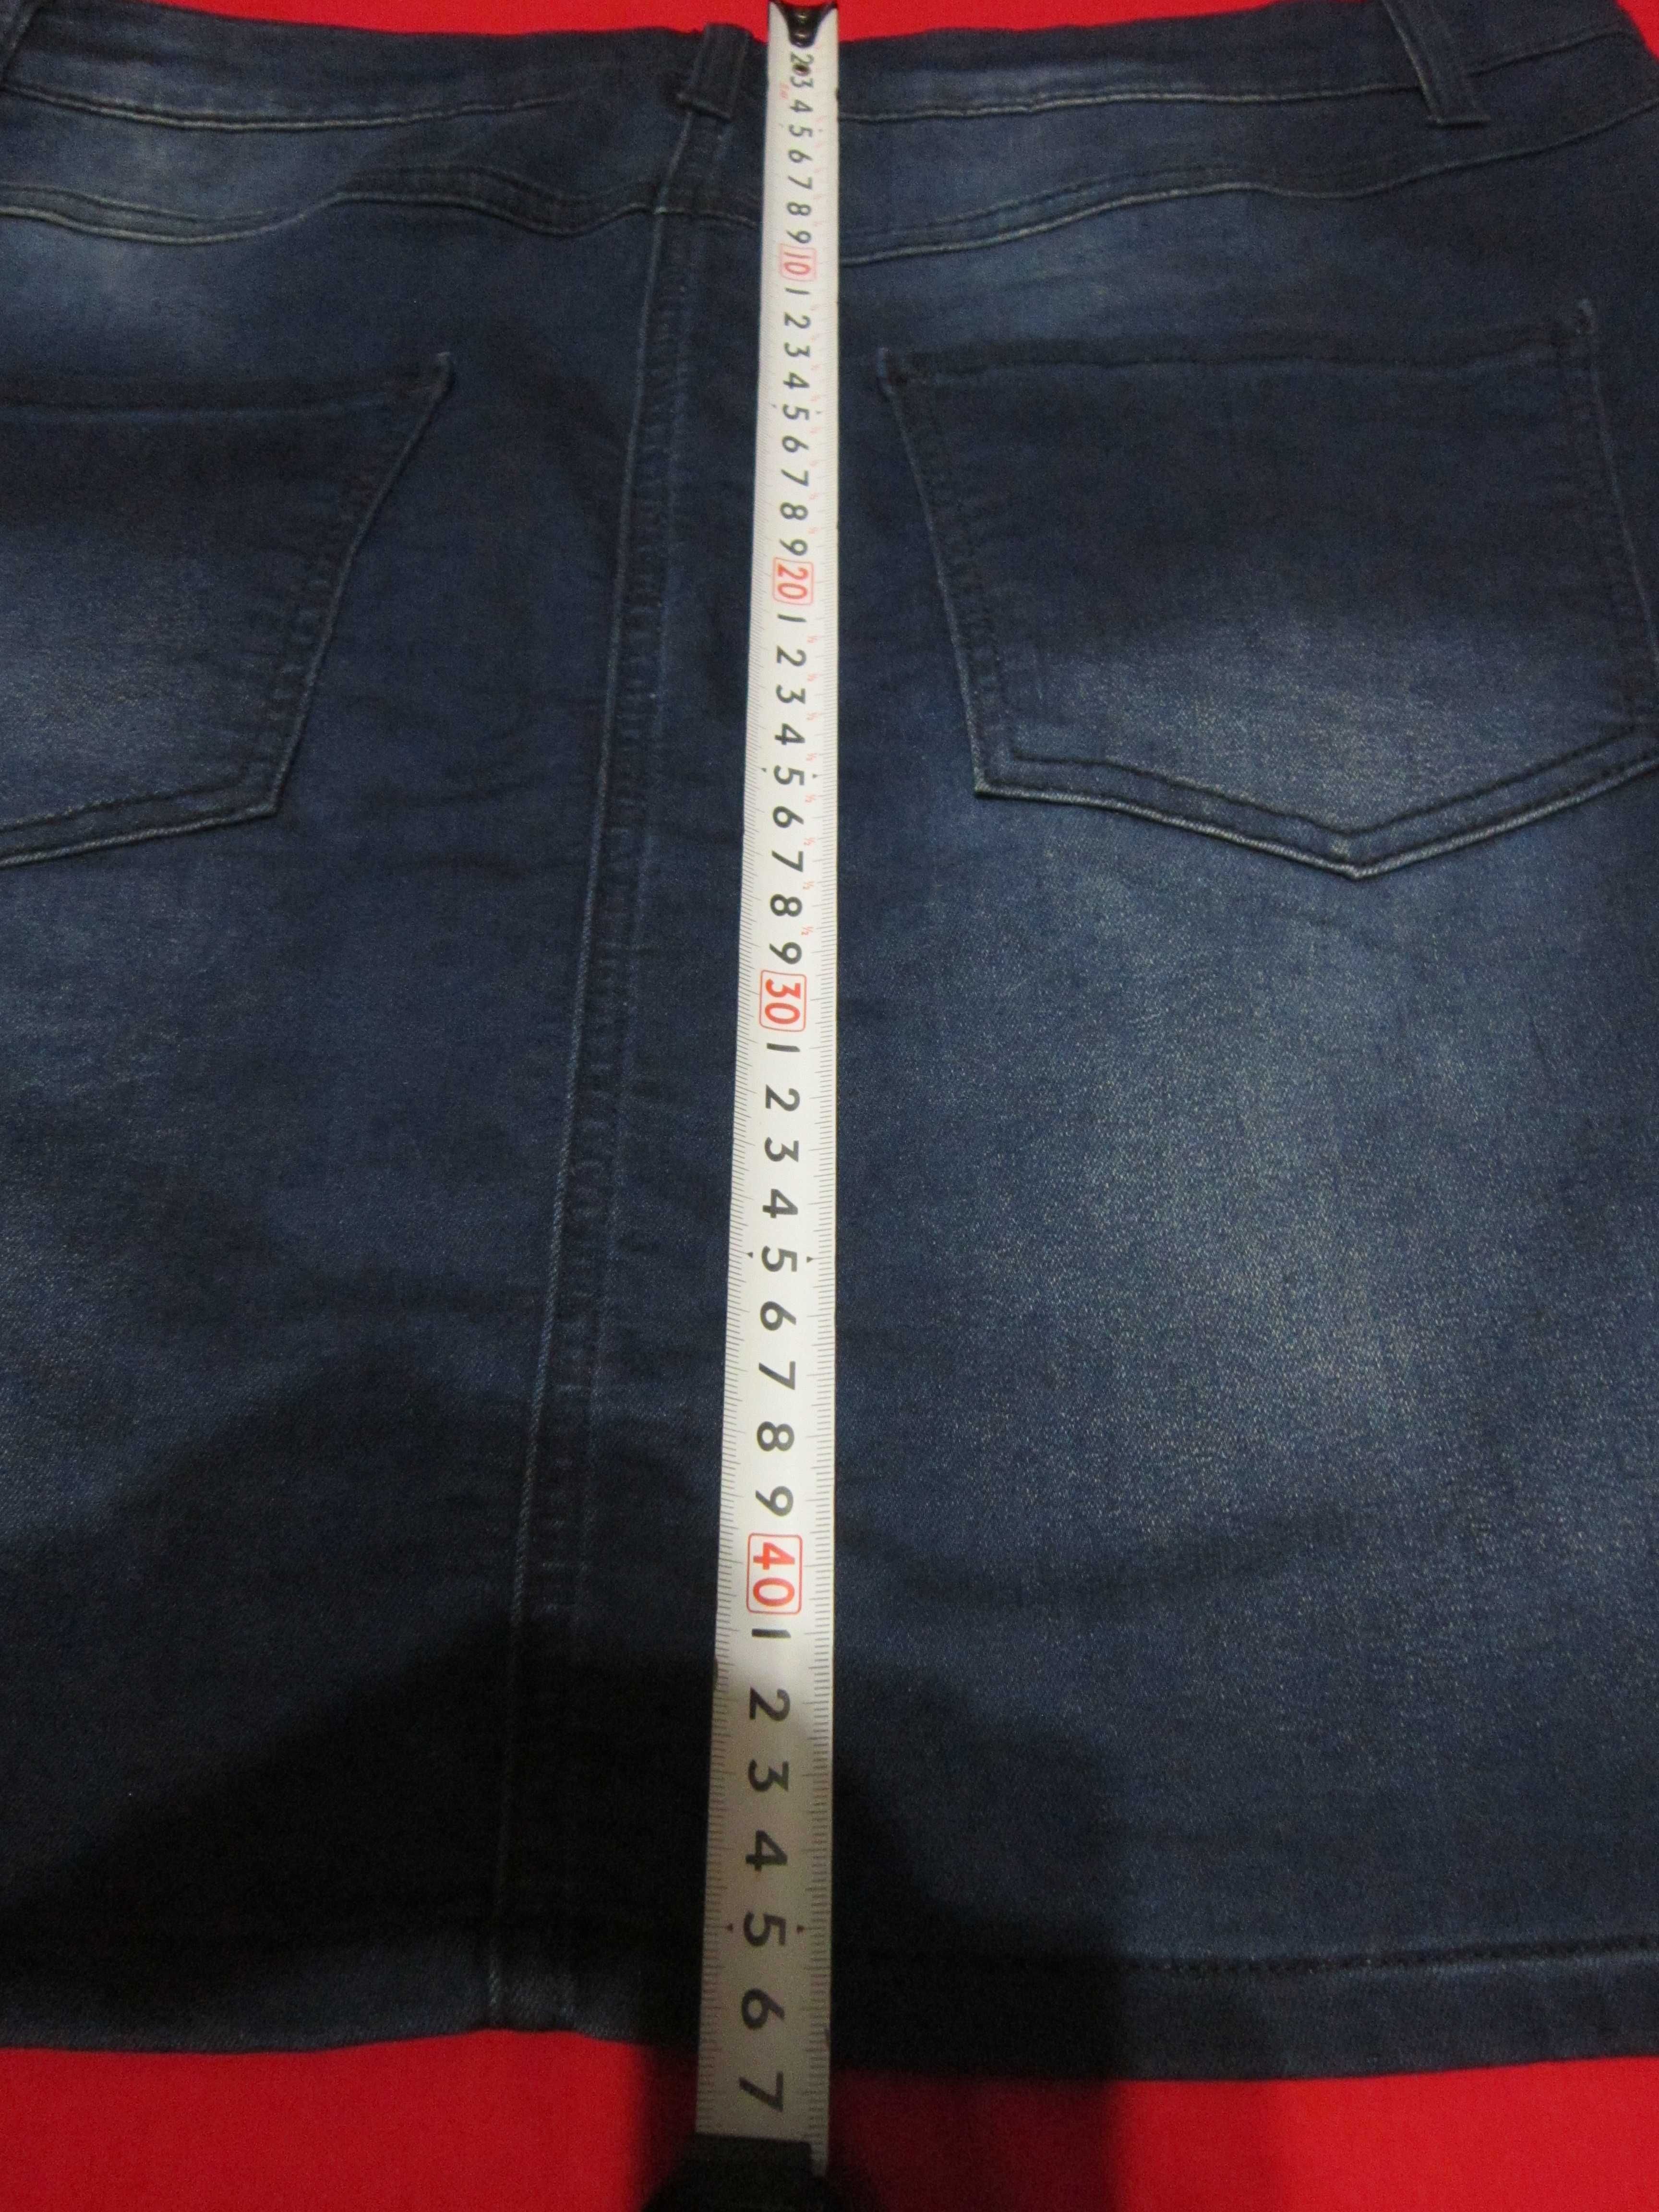 Юбка джинсовая стрейчивая , женская р 52  б у